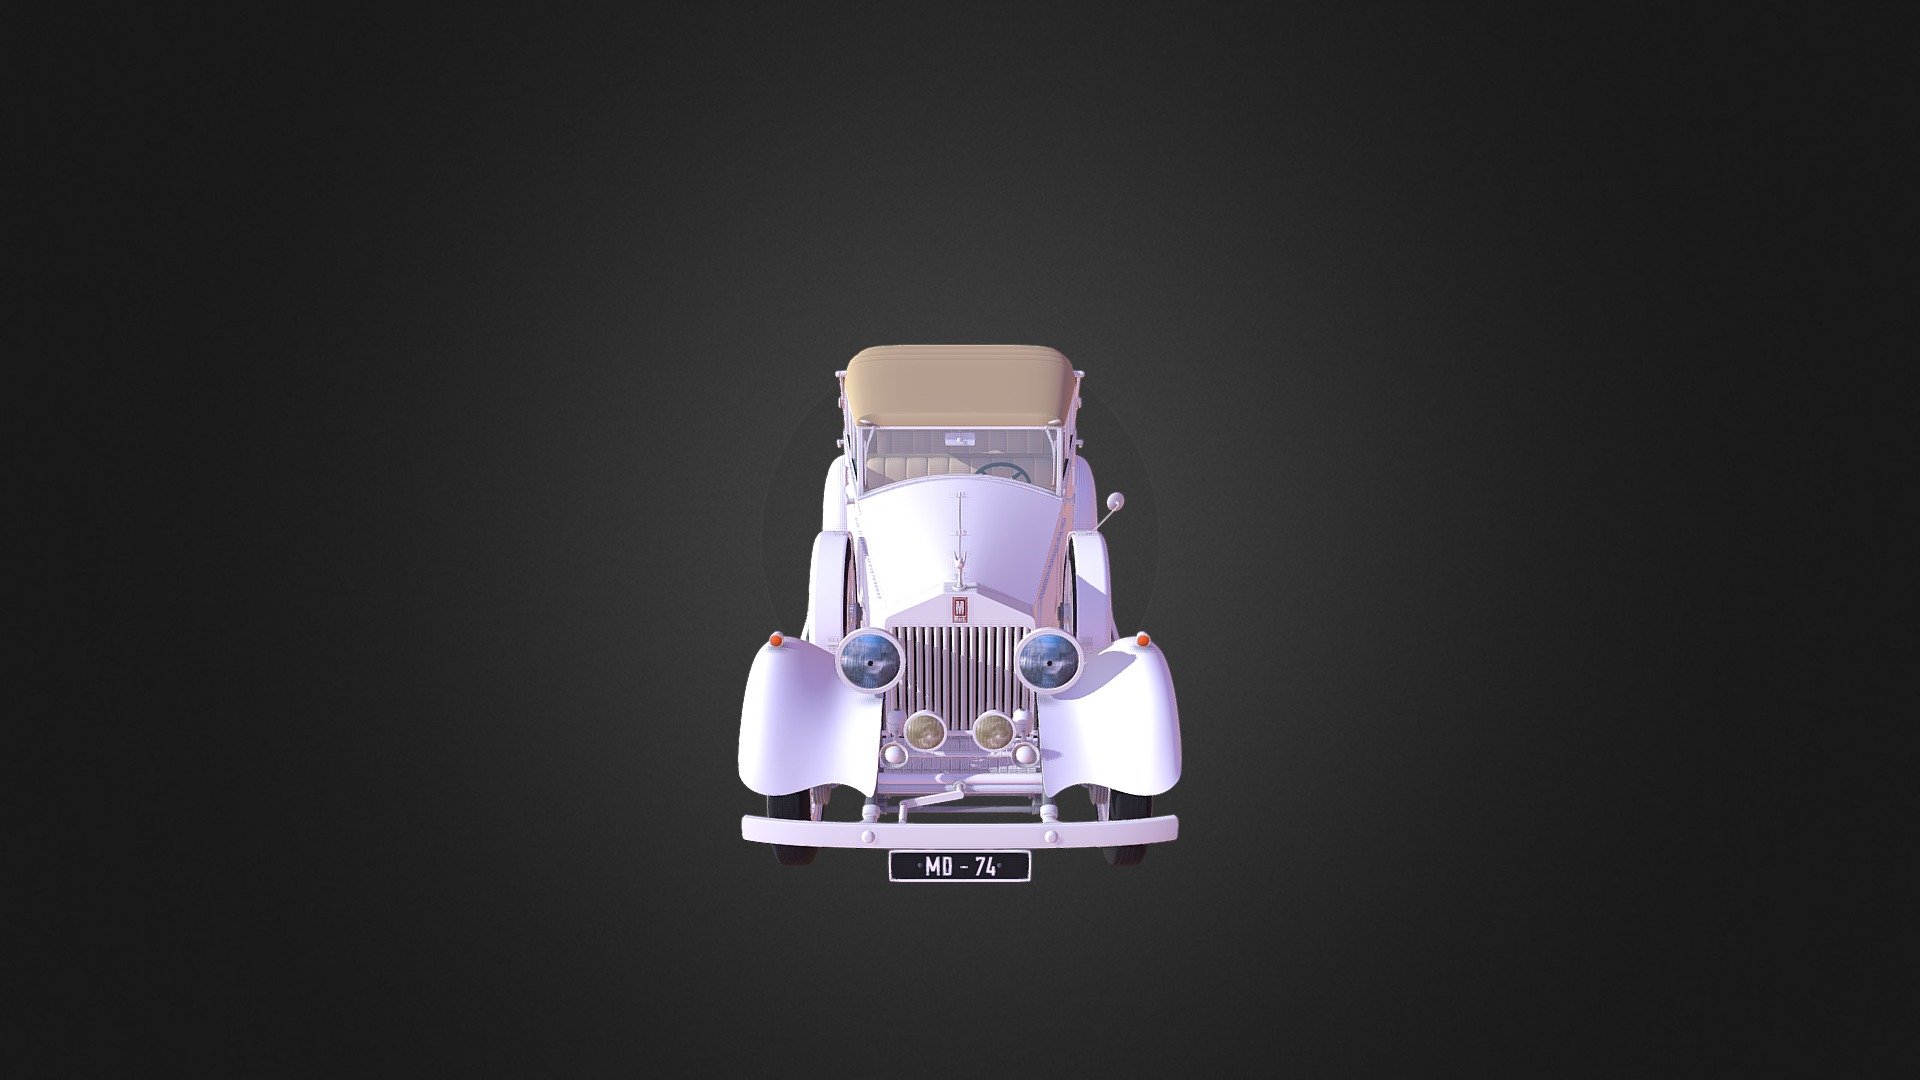 Rolls Royce - 3D model by Odessa_Lebsack 3d model